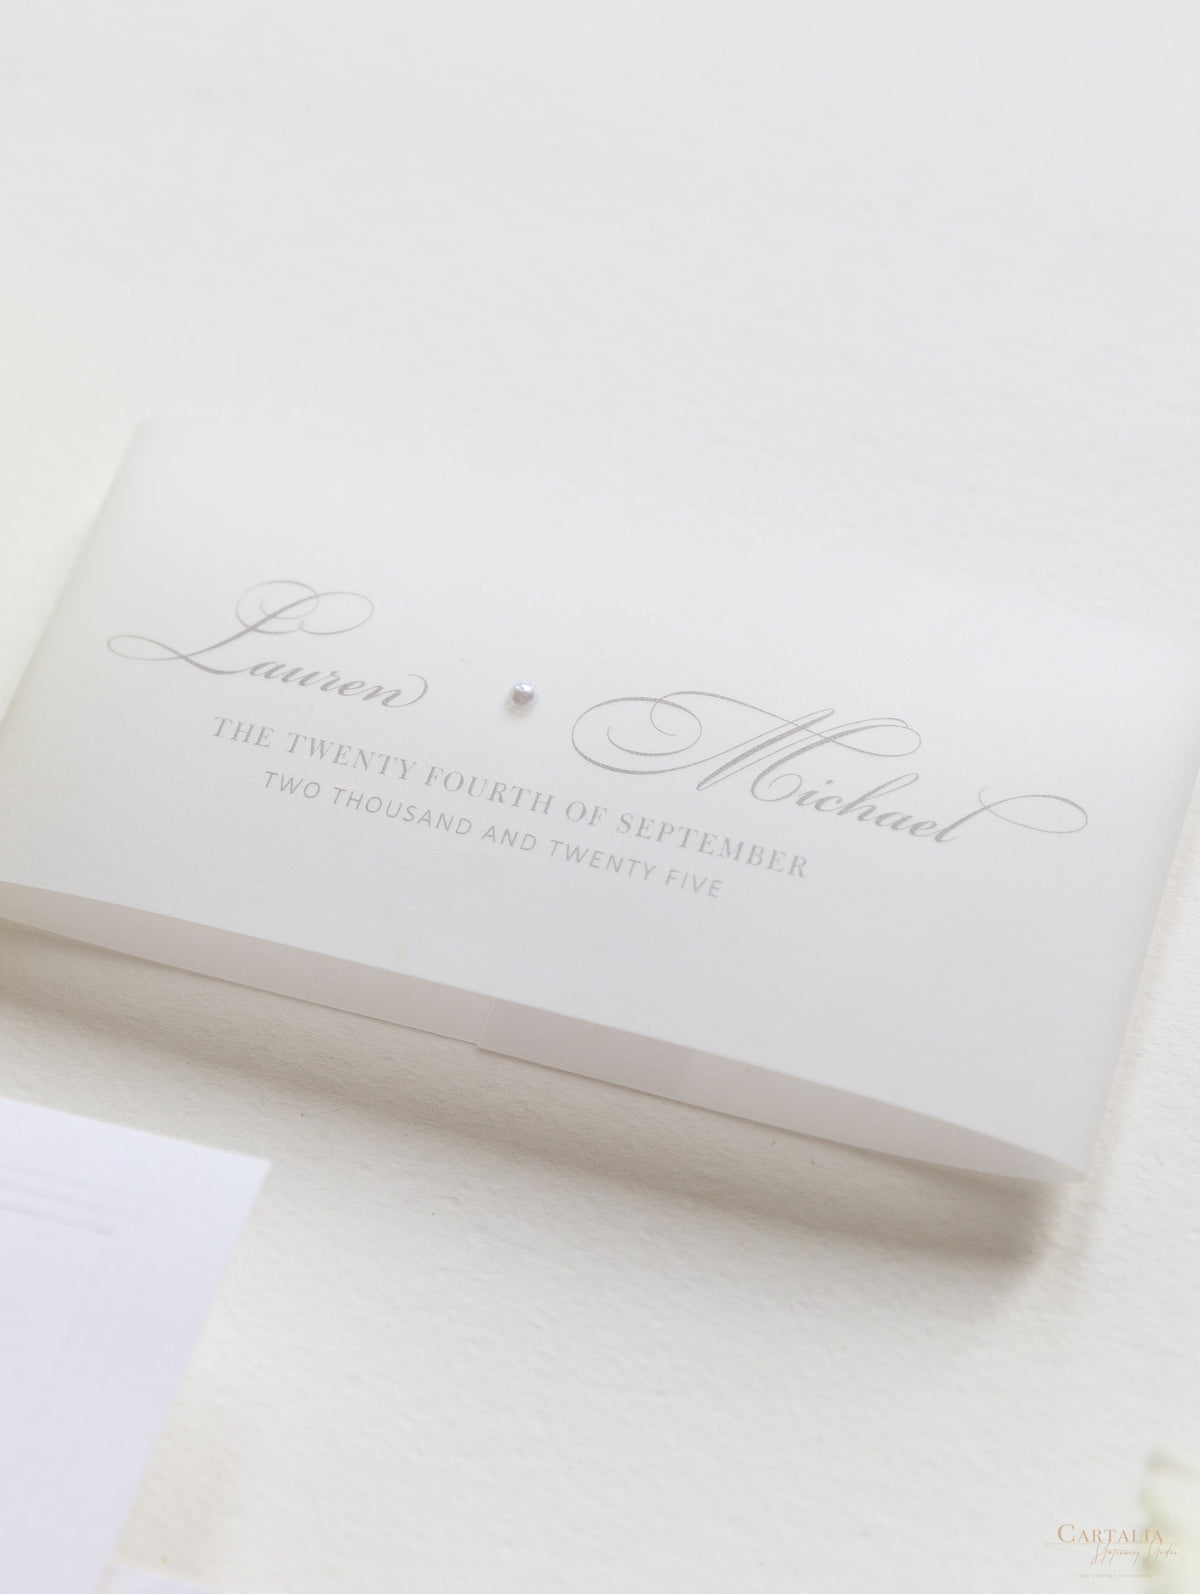 Invitation de poche en perle de luxe en relief avec réception et cartes RSVP liées dans la bande de ventre de vélin + enveloppes